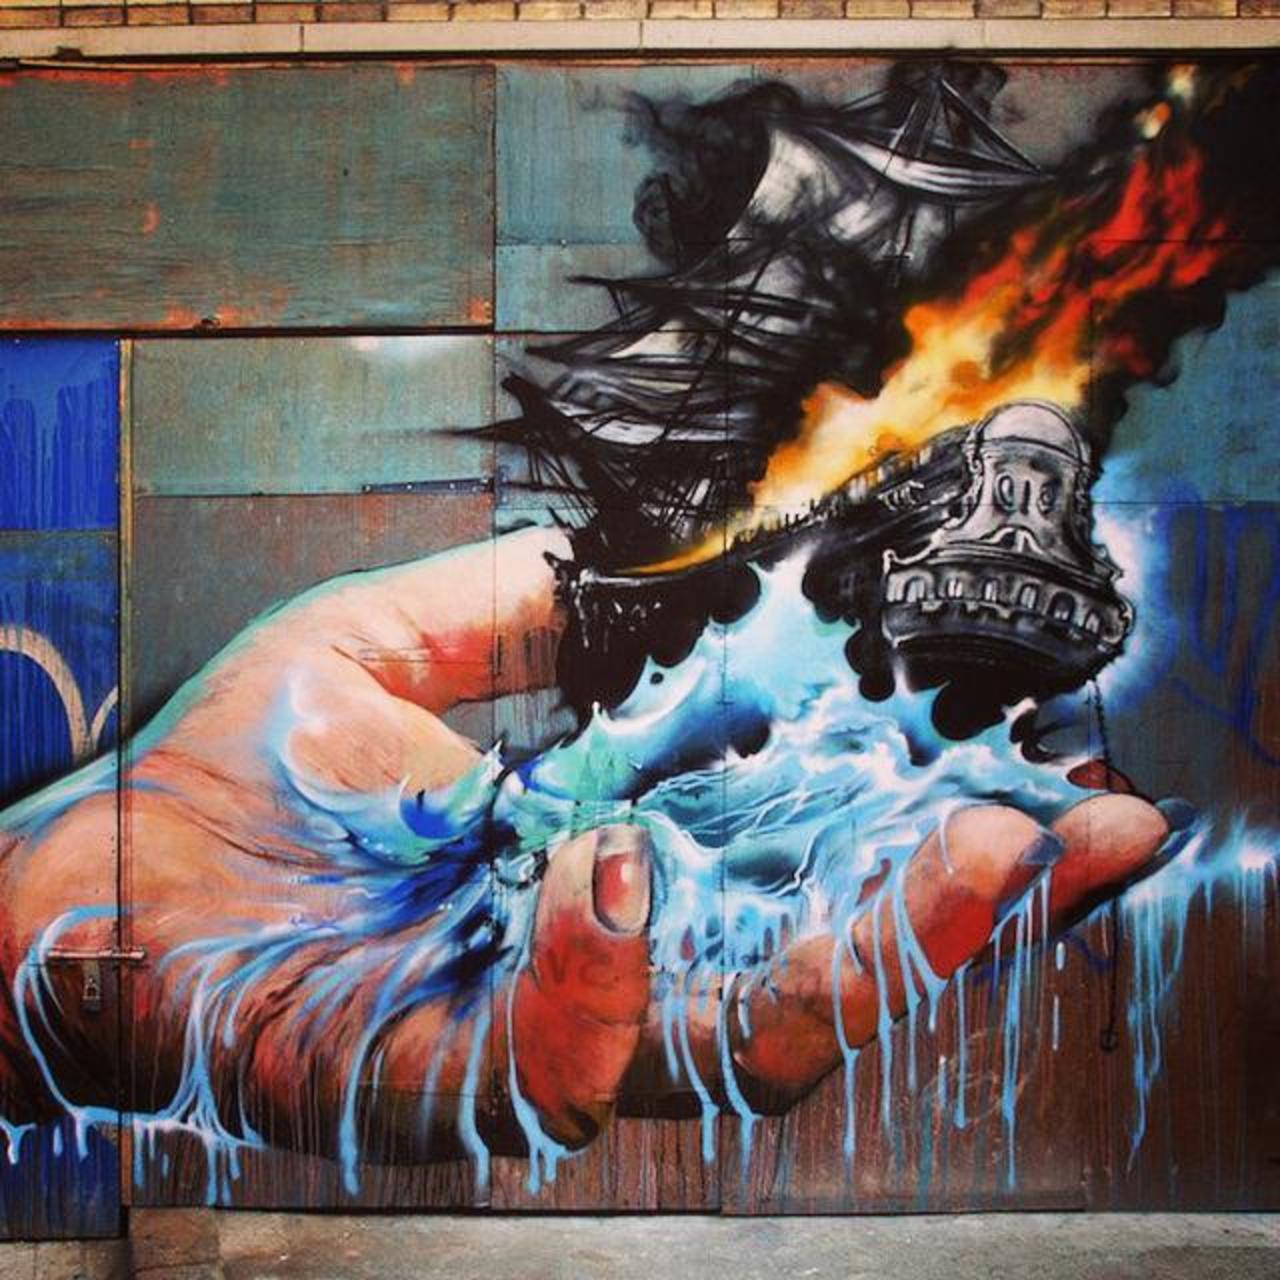 Cool street art.

#Street #art #Graffiti #Philly #hands #walls http://t.co/KHuZJP9qXY